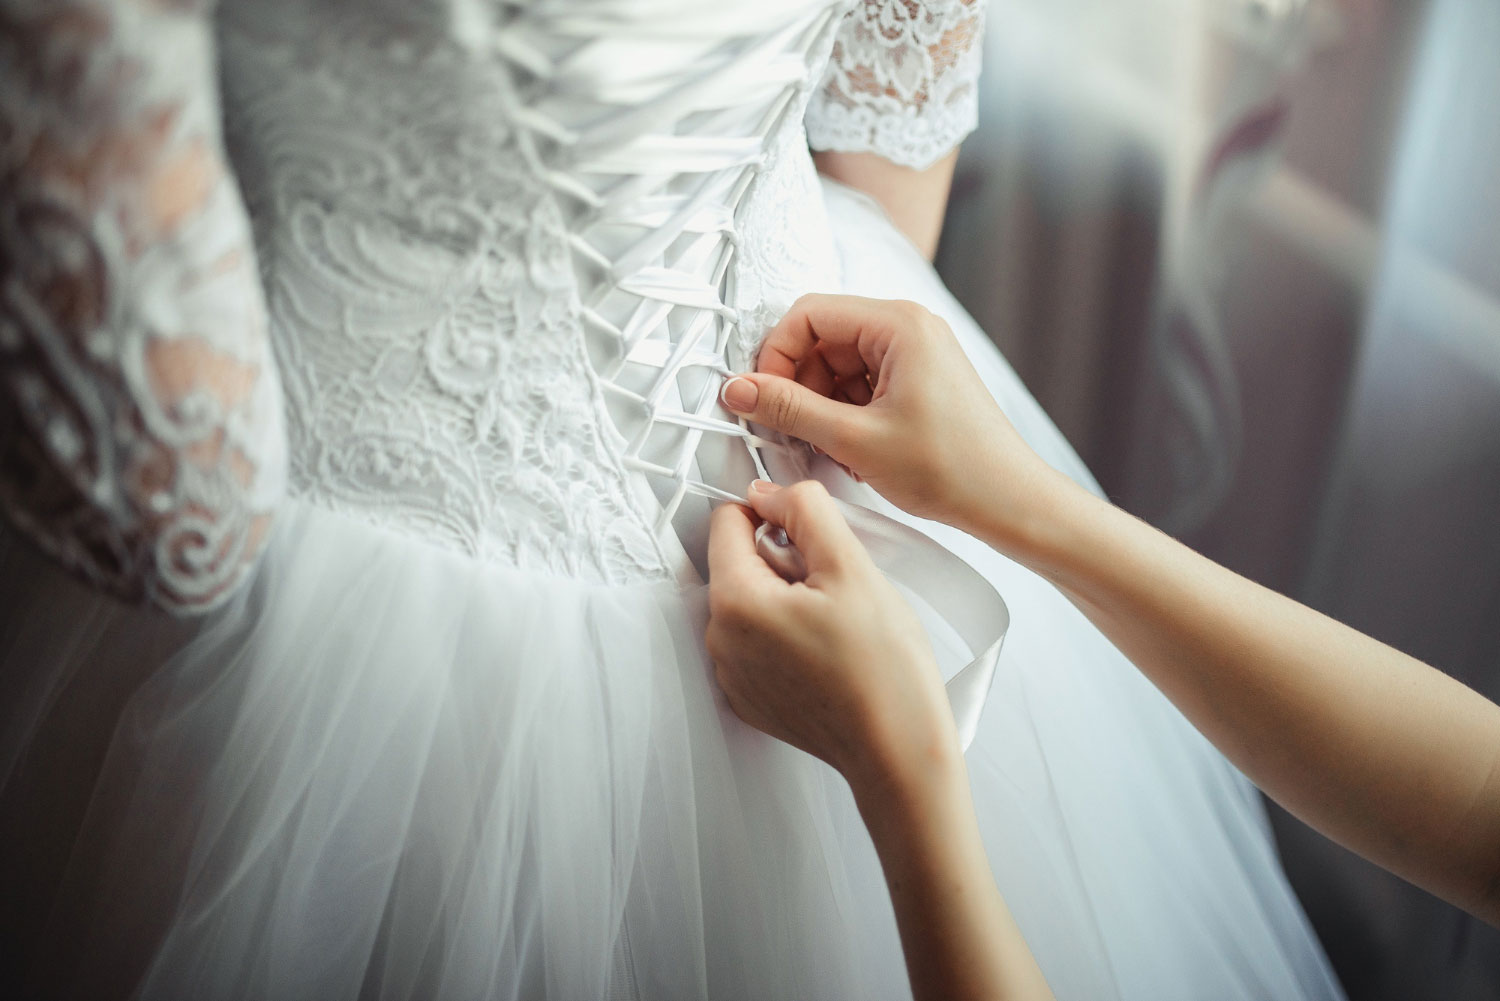 Pessoa ajustando os detalhes finais de um vestido noiva 2023 no corpo de uma mulher